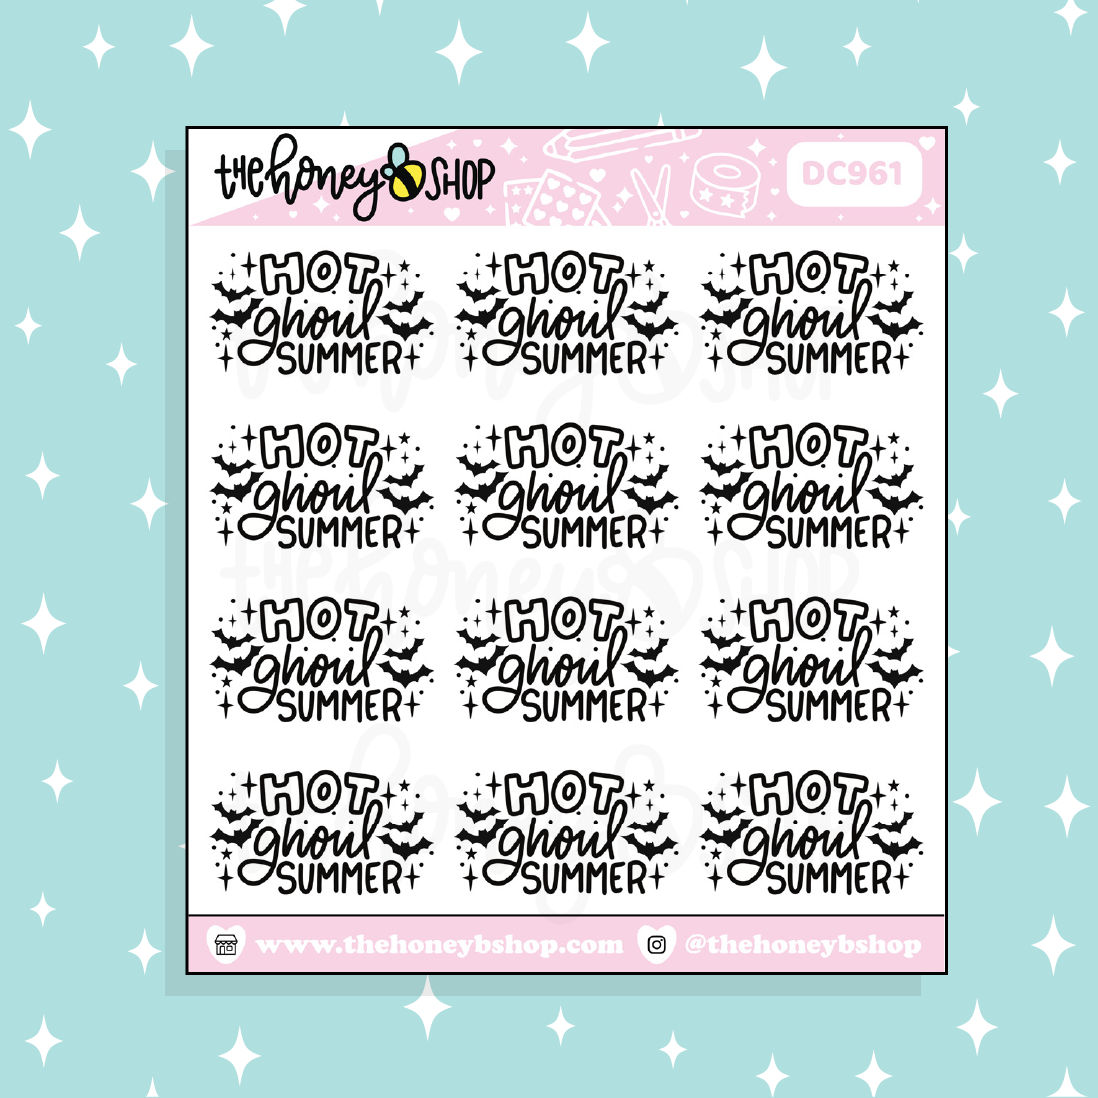 Hot Ghoul Summer Doodle Sticker